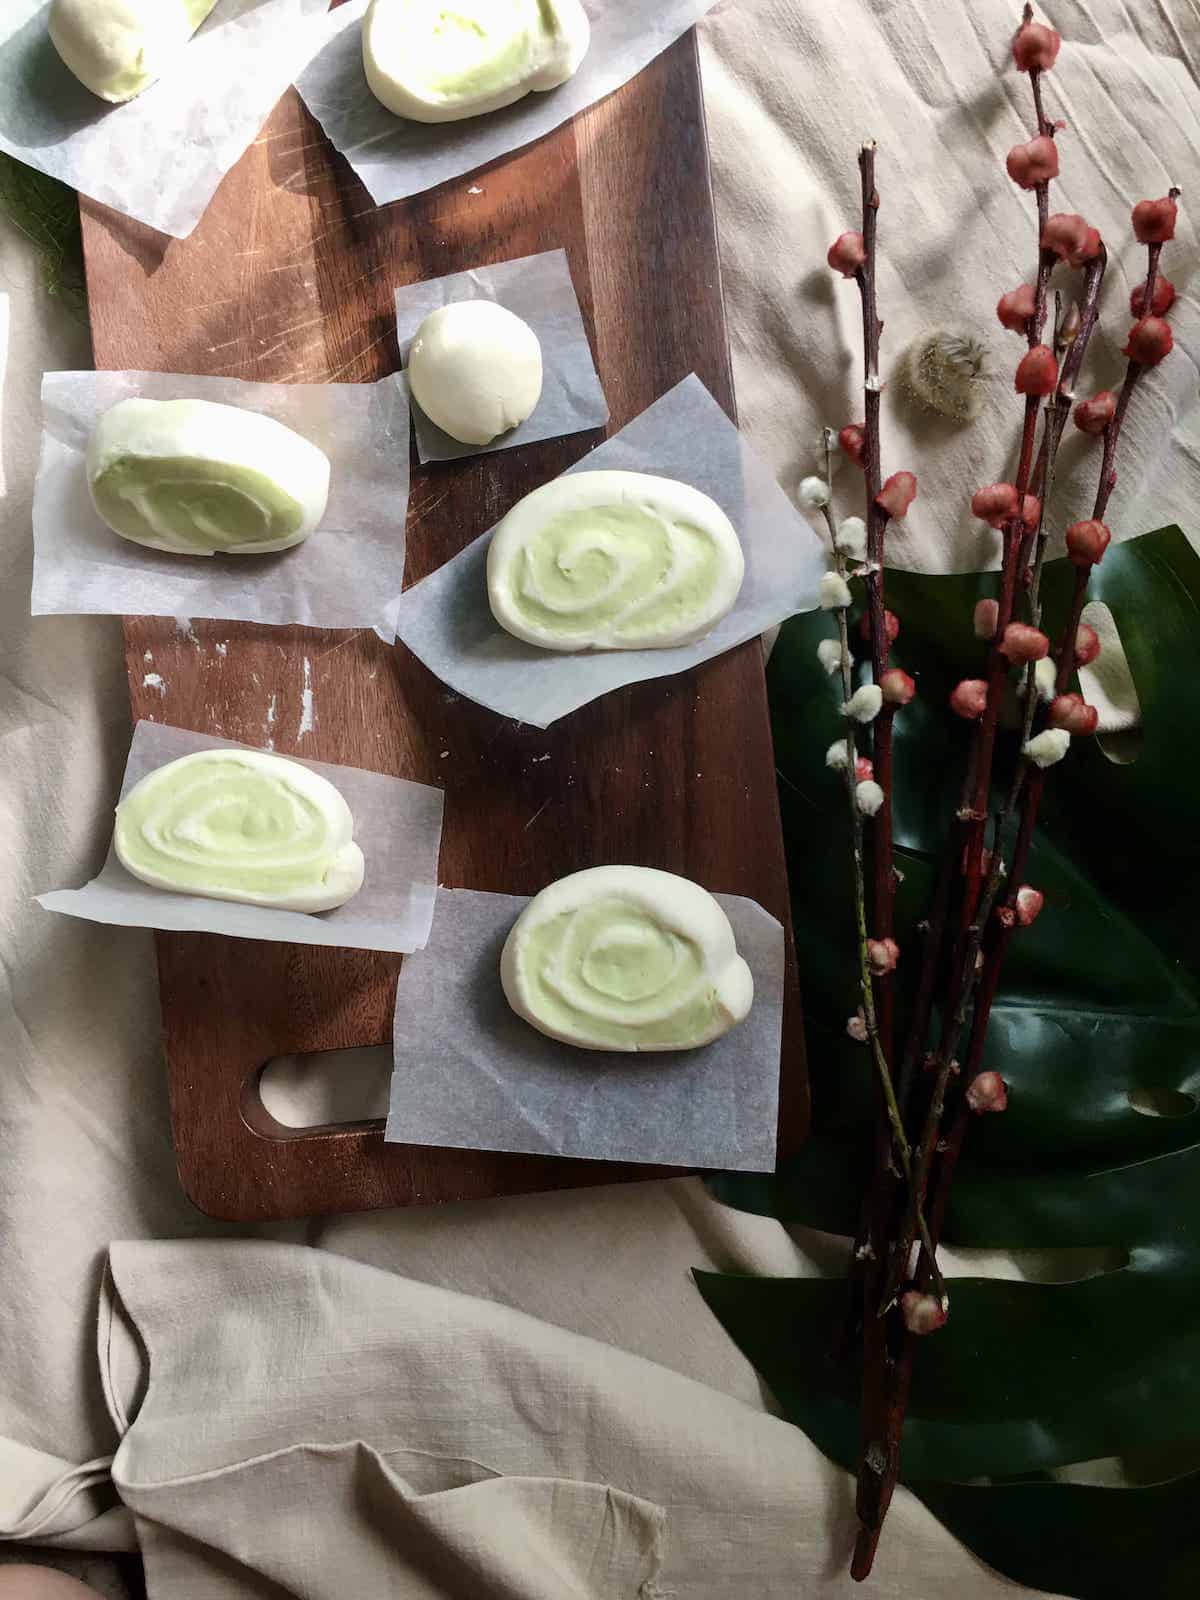 6 green & white mantou buns on a serving board.